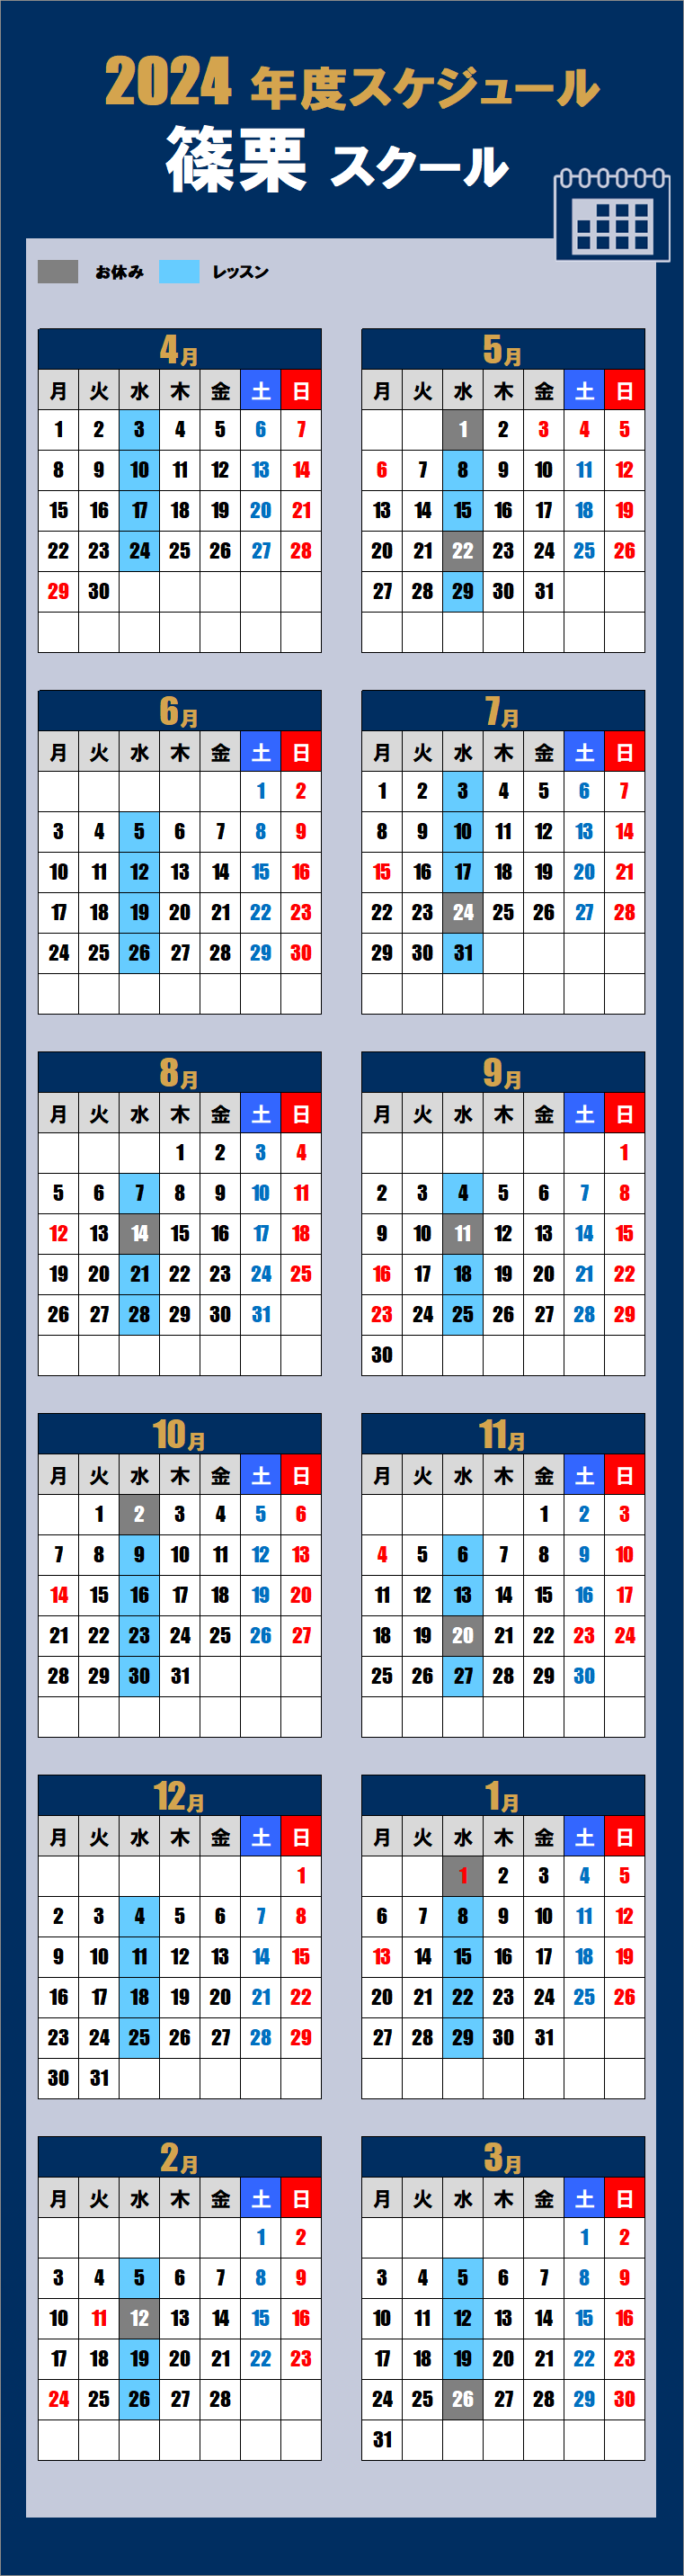 2024篠栗スクールカレンダー